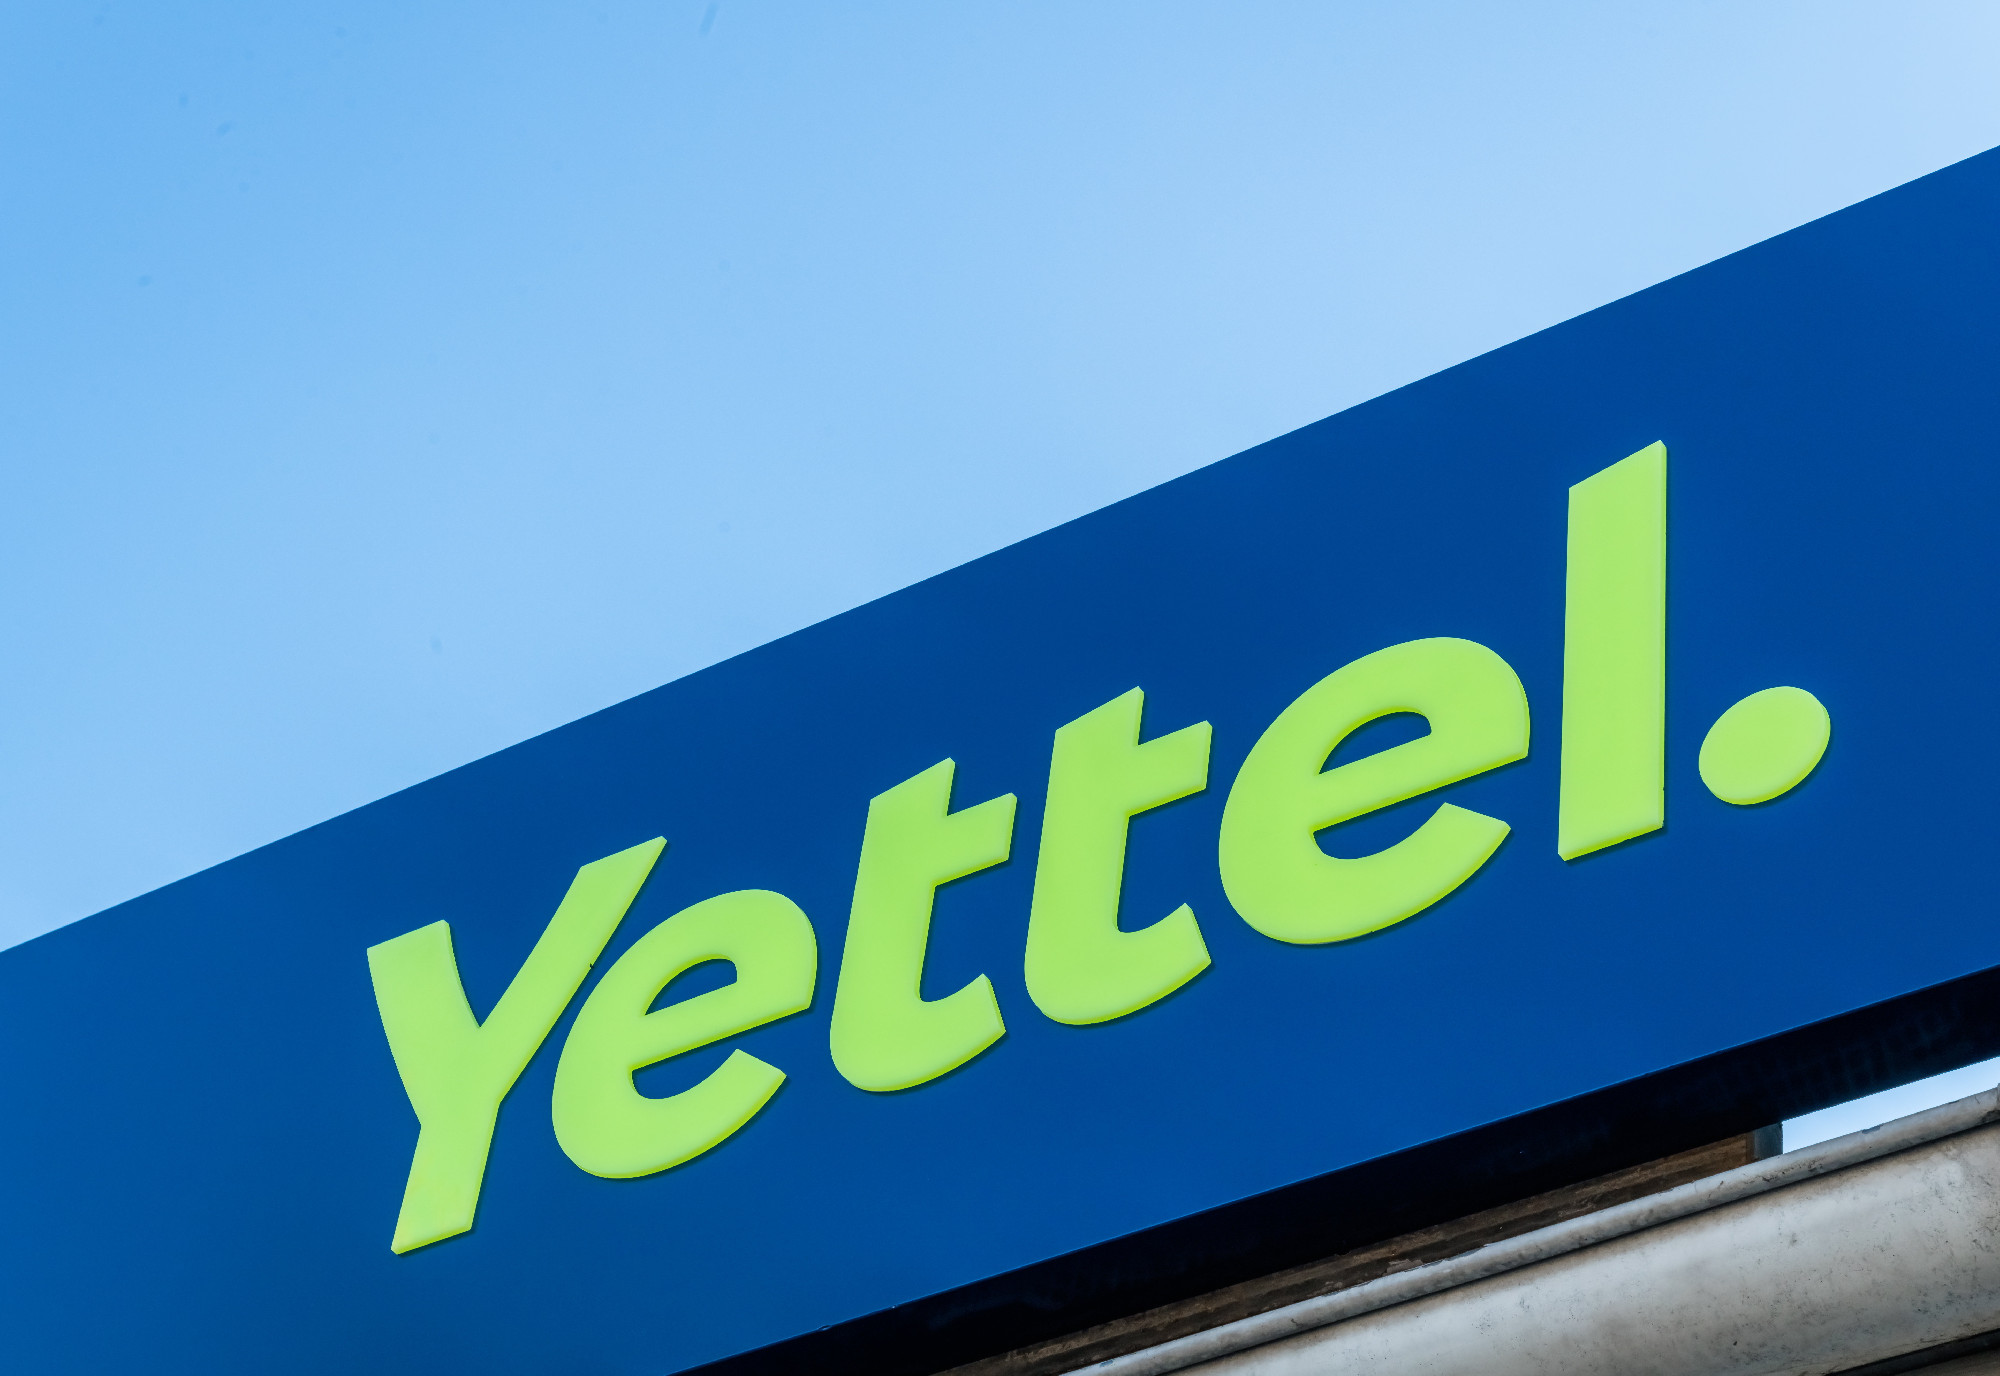 Csaknem 180 ezer ügyfelét kell kompenzálnia a Yettelnek – megszólalt a cég